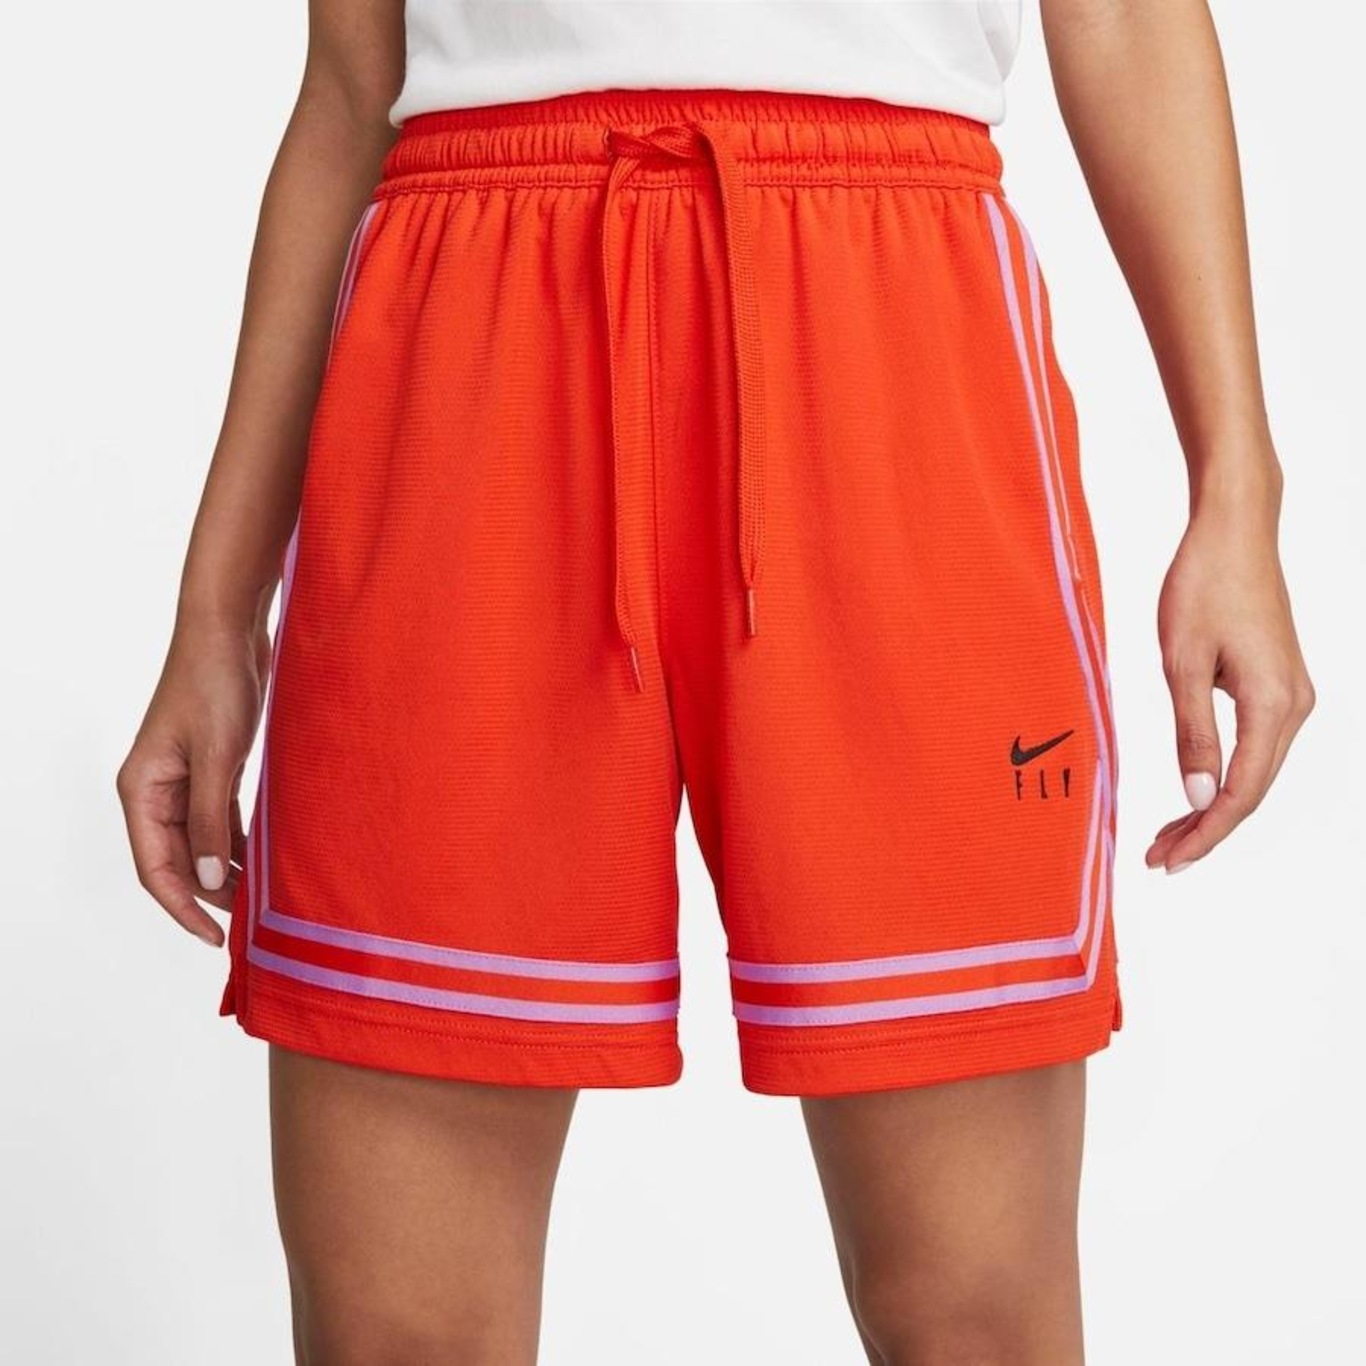 Nike Swoosh Fly, a coleção de roupas de basquete feita para